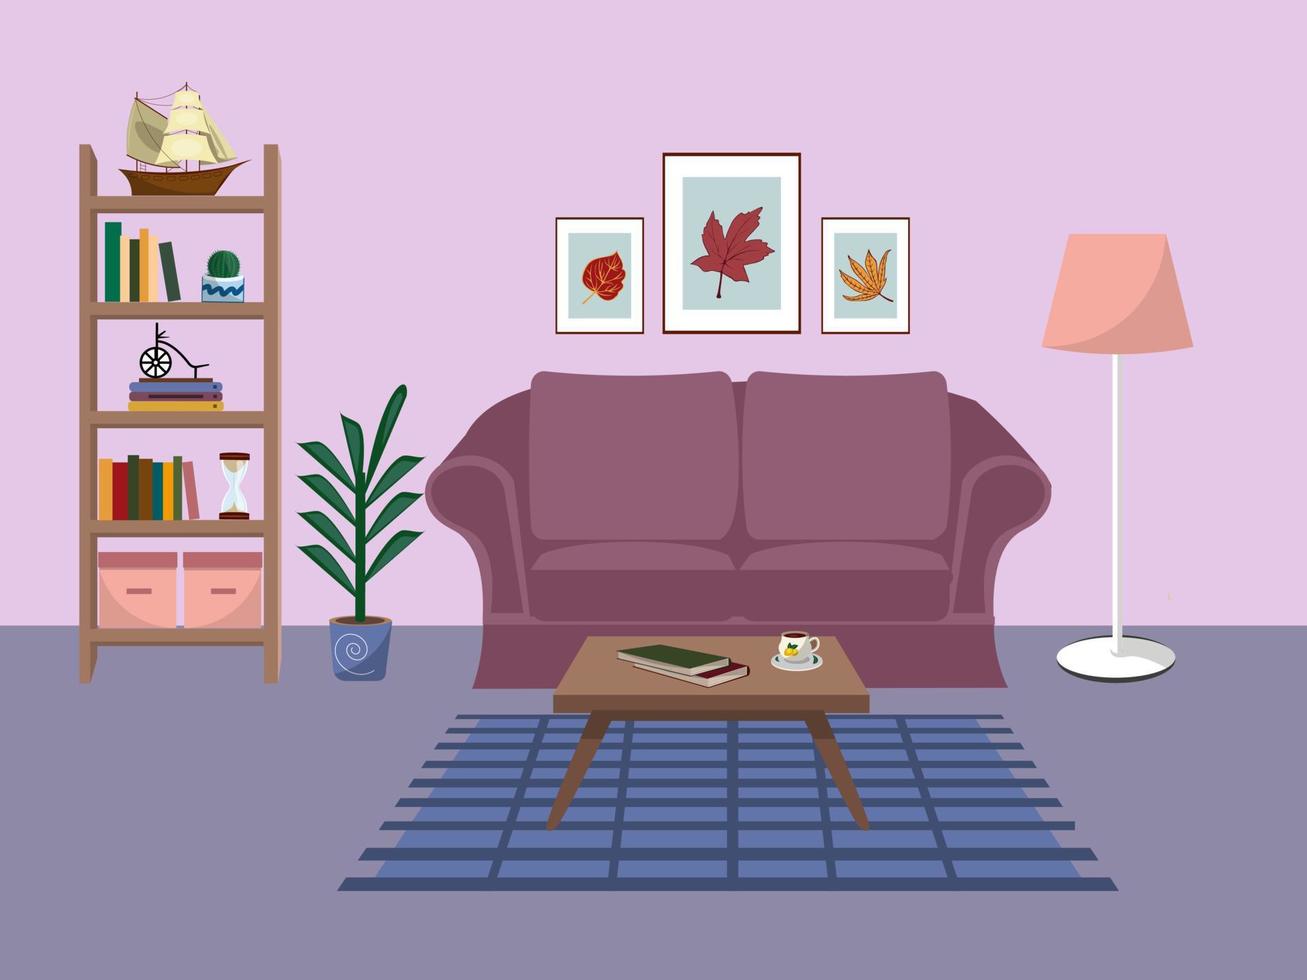 Wohnzimmereinrichtung mit bequemem Sofa, Bücherregal, Zimmerpflanzen und Wohndekorationen. flache Cartoon-Vektor-Illustration vektor